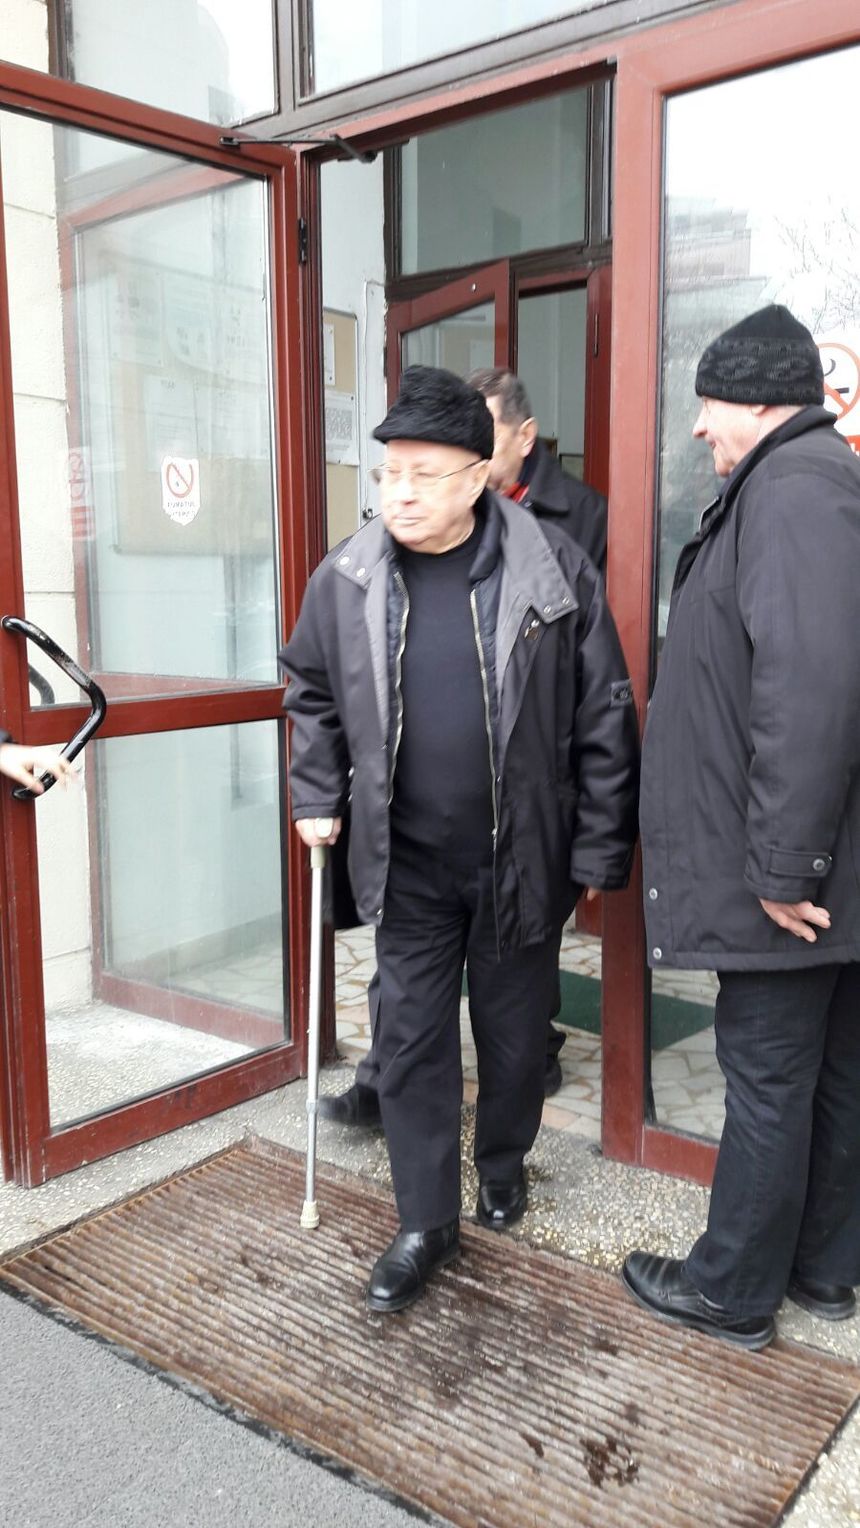 "Cico” Dumitrescu: M-au băgat în dosarul Mineriadei că au vrut să mă bage, nu am fost acolo. Eu spun că Iliescu nu este vinovat. De ce nu îi întreabă pe cei care au dat foc la clădirea Poliţiei?